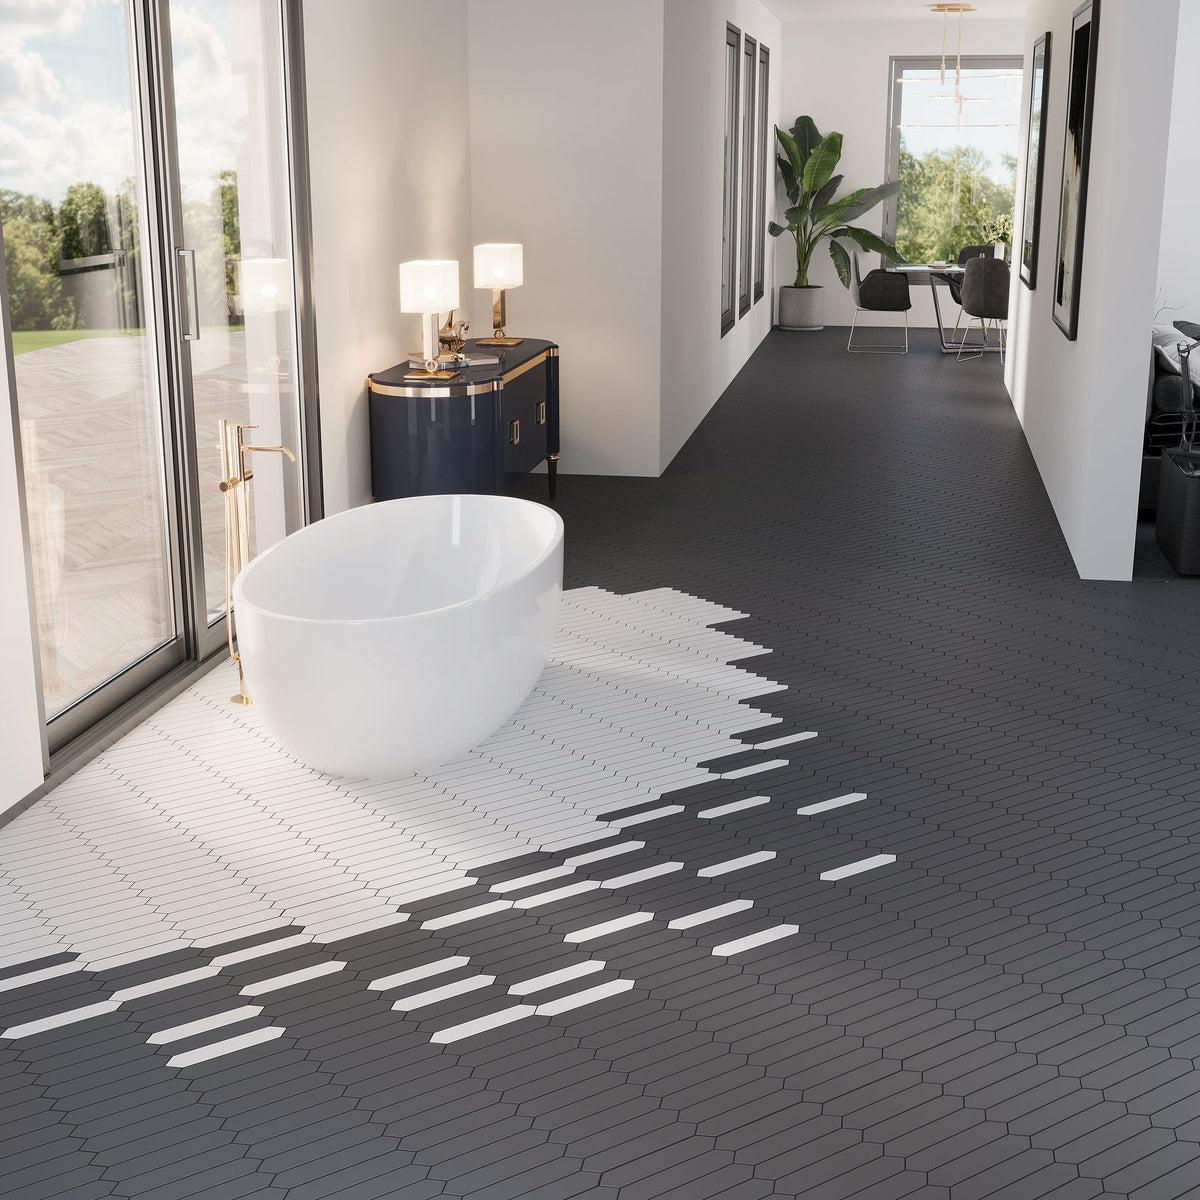 Black and white ceramic tile floor in modern open plan bathroom